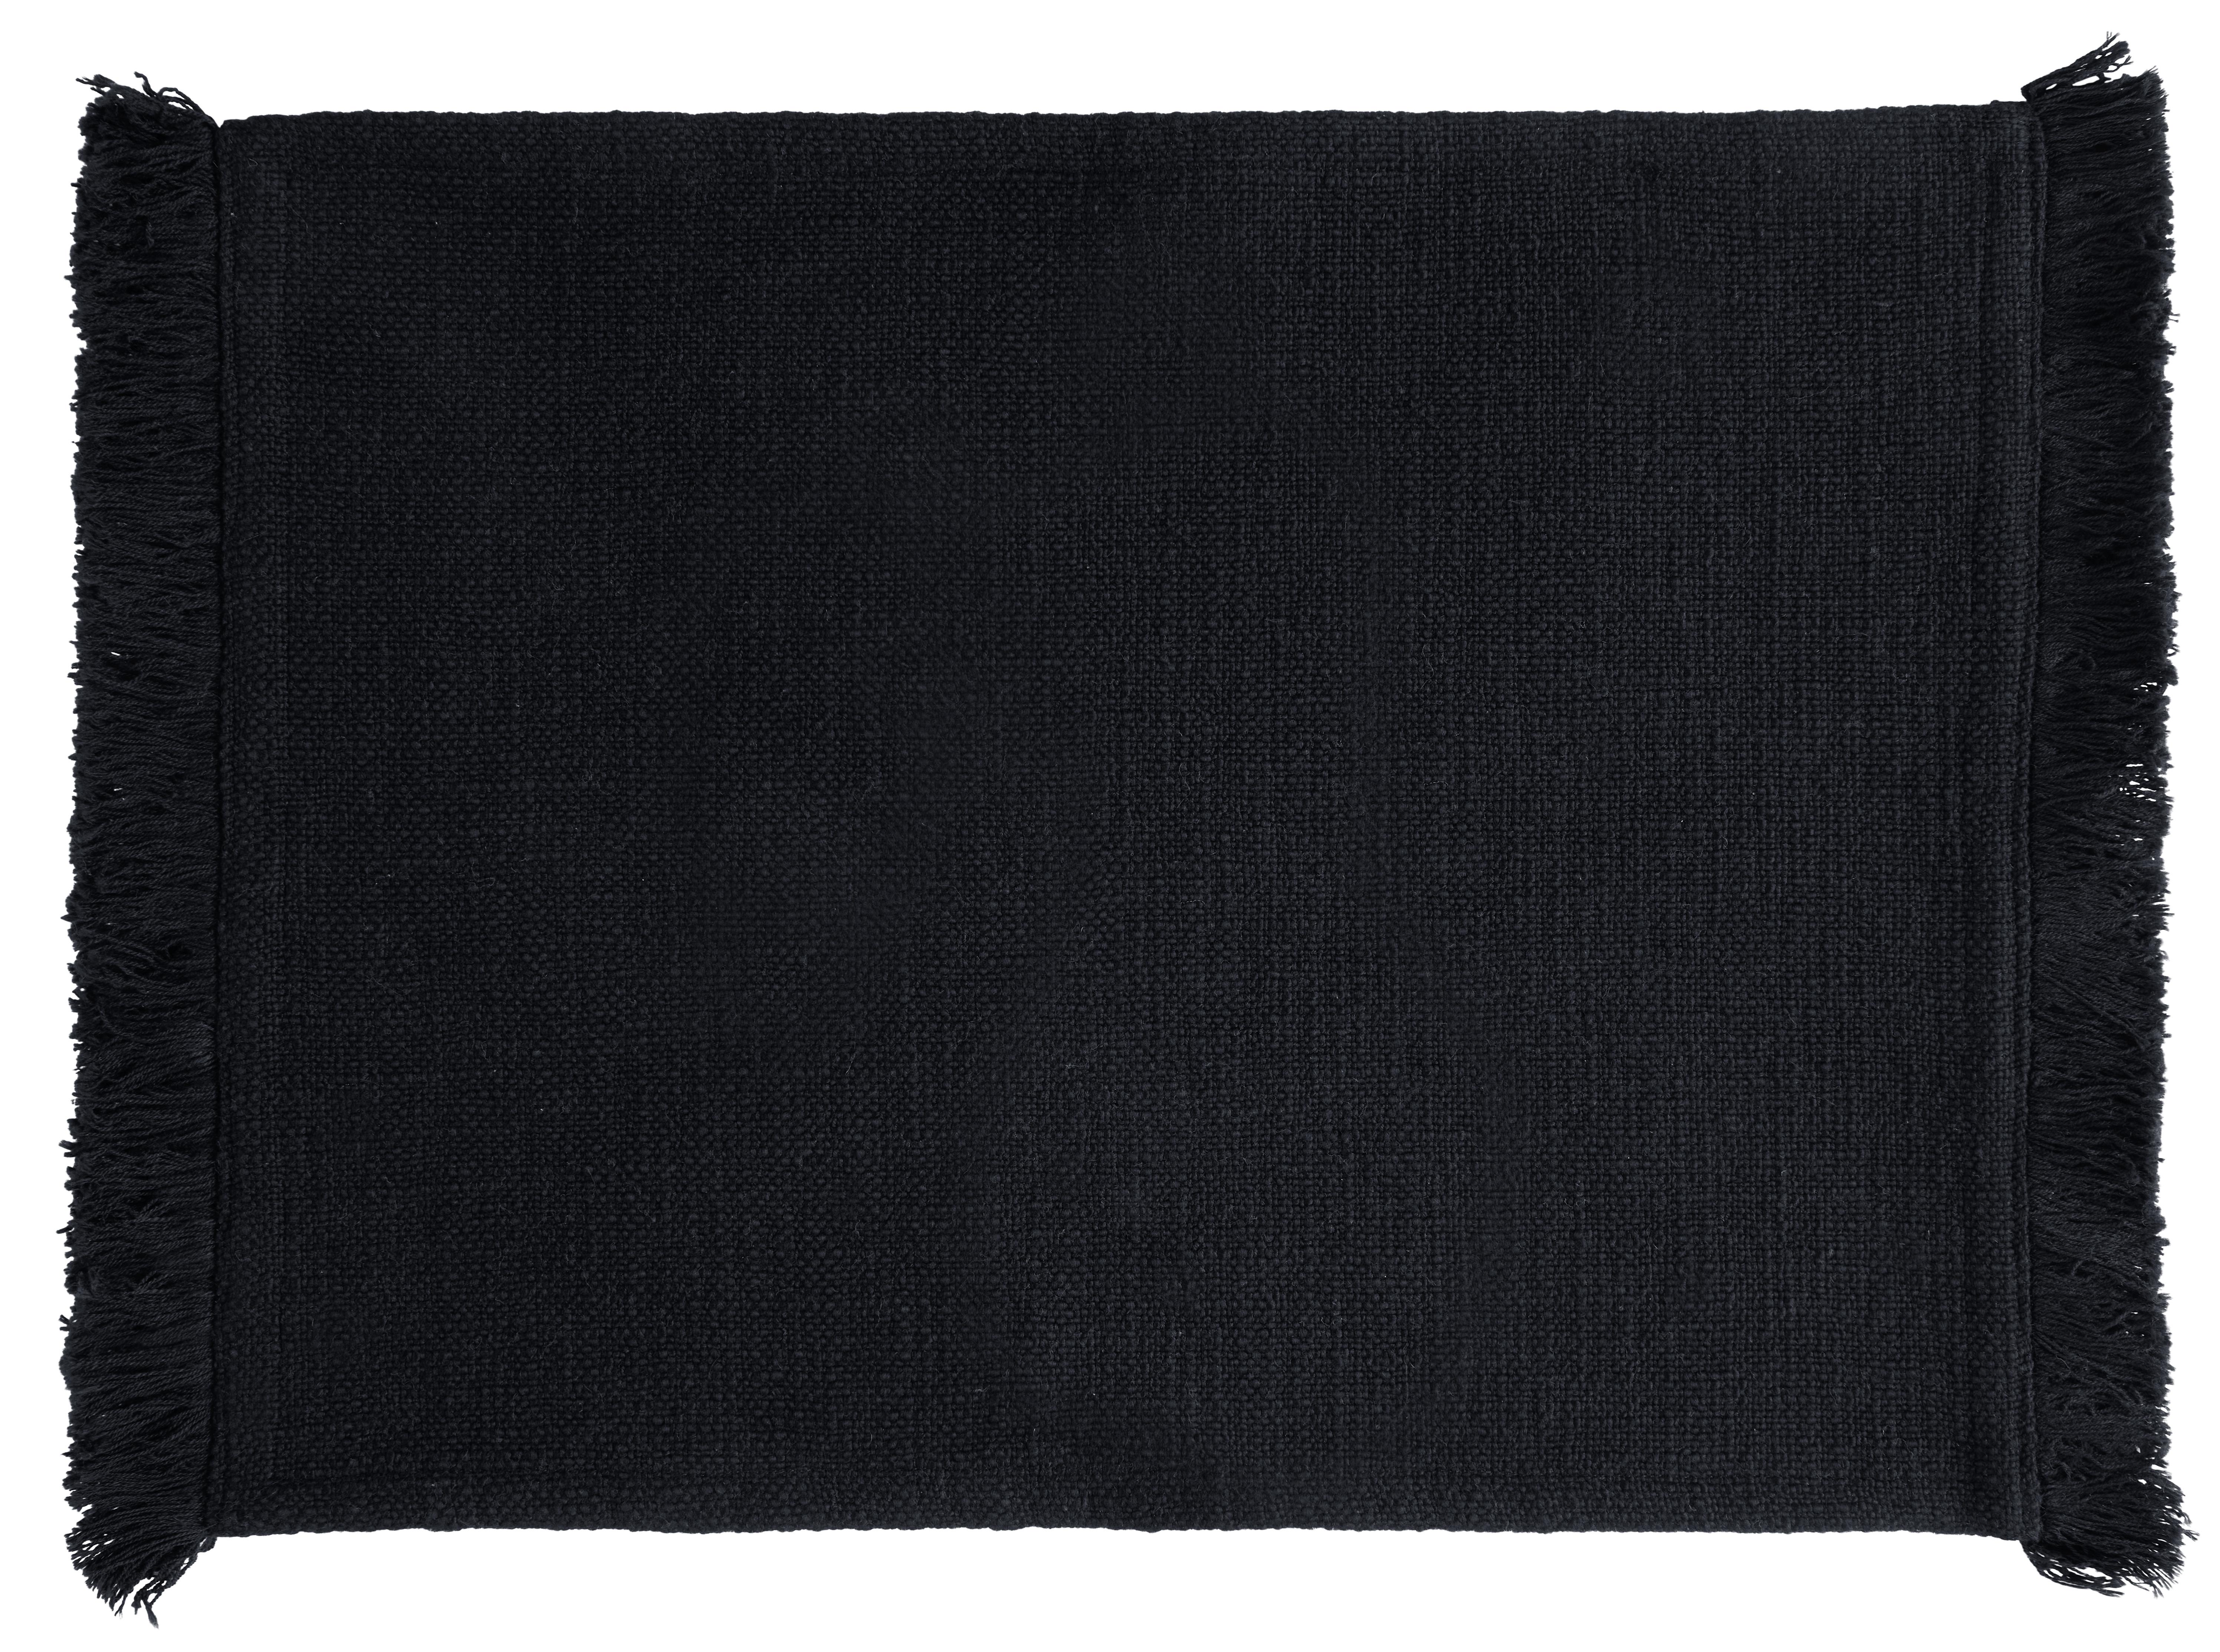 Namizni Pogrinjek Pablo - črna, Moderno, tekstil (35/45cm) - Premium Living